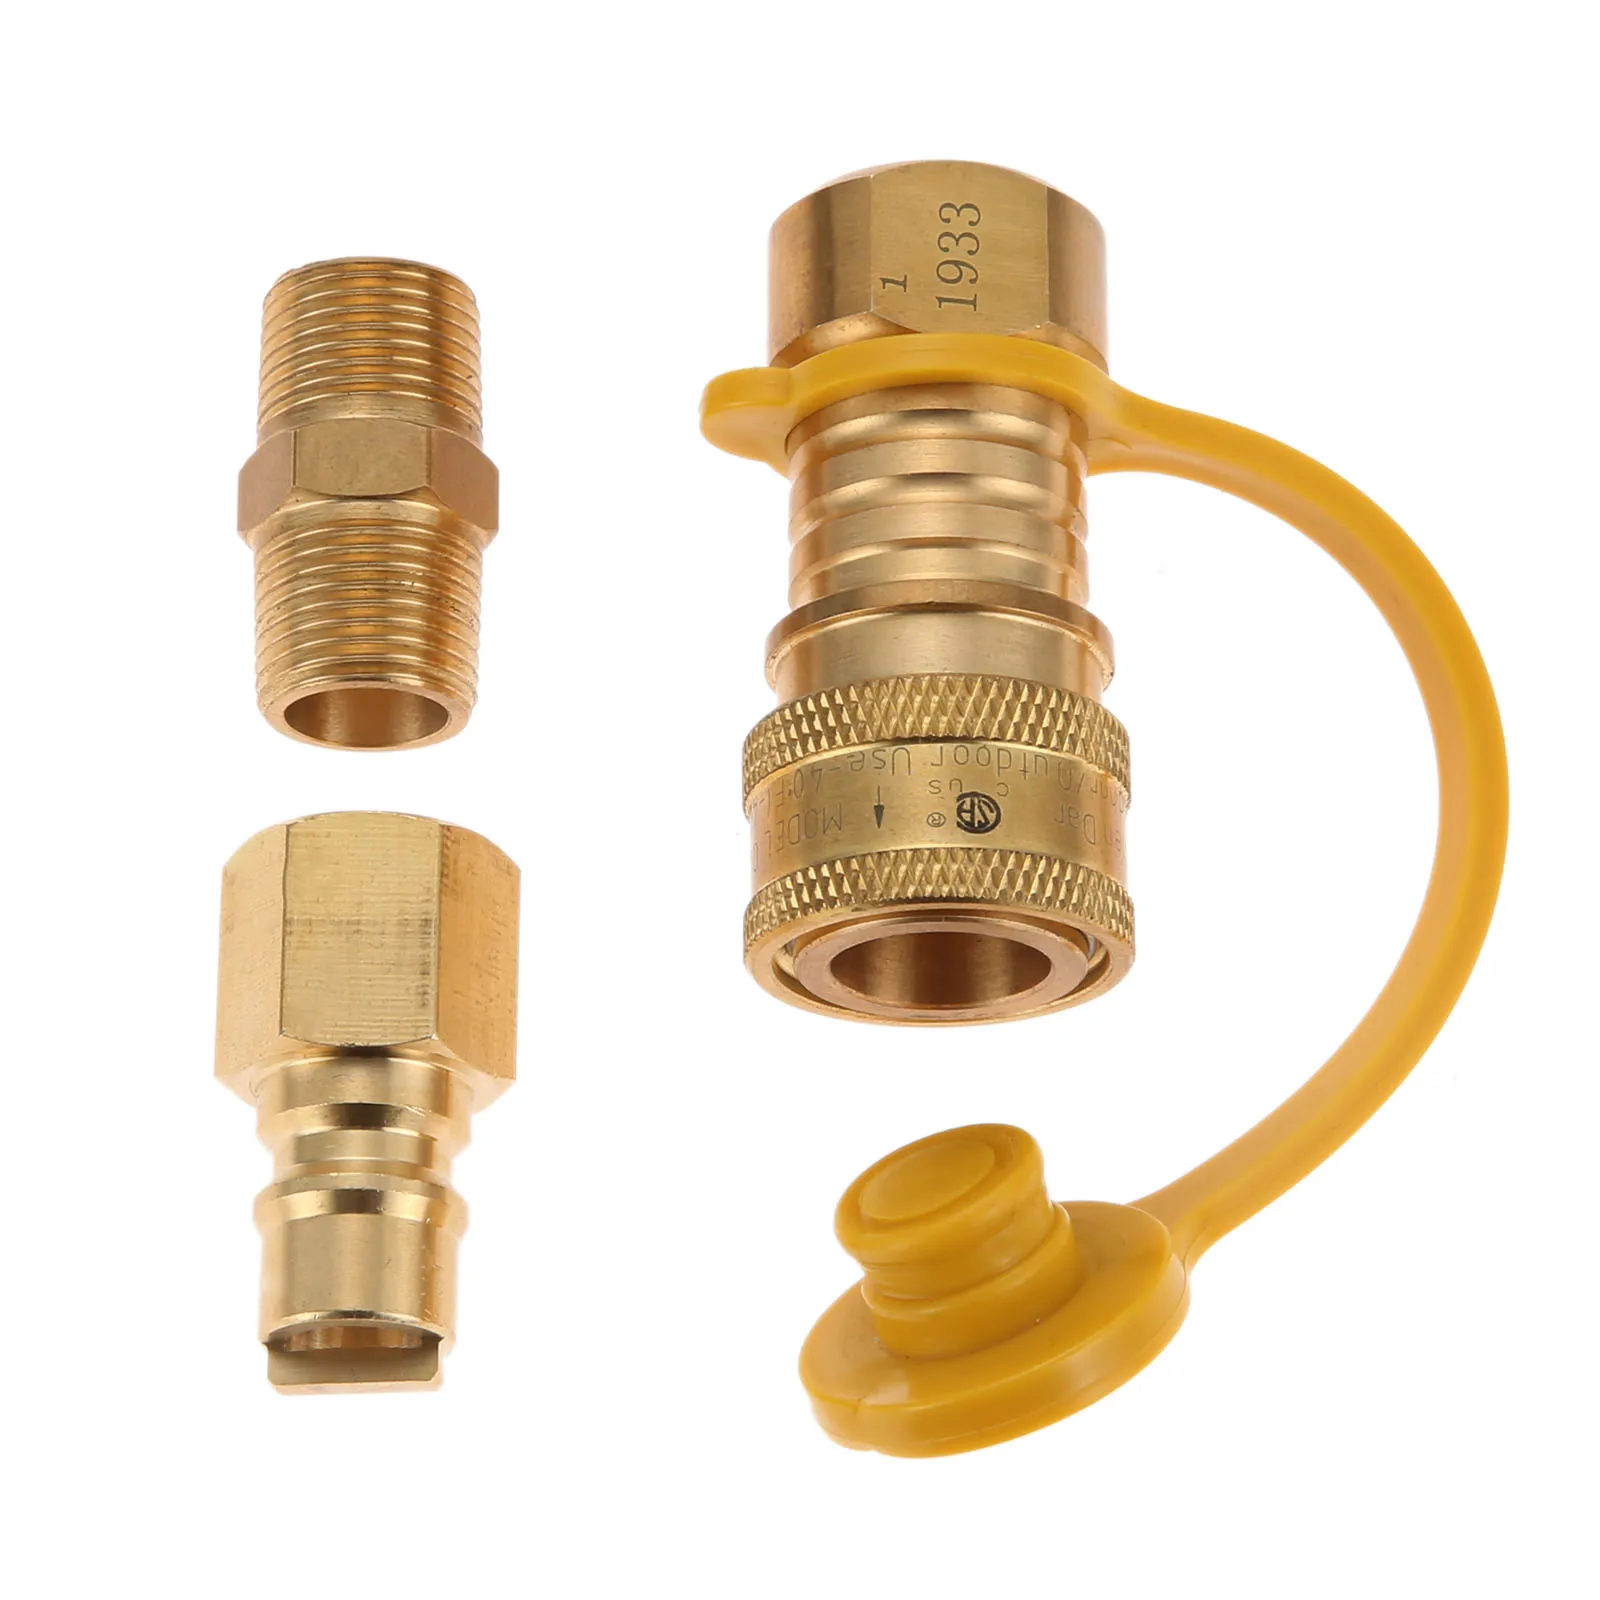 Gas Verbinder Adapter Schnell Armaturen Propan Schlauch Messing Stecker Elemente 